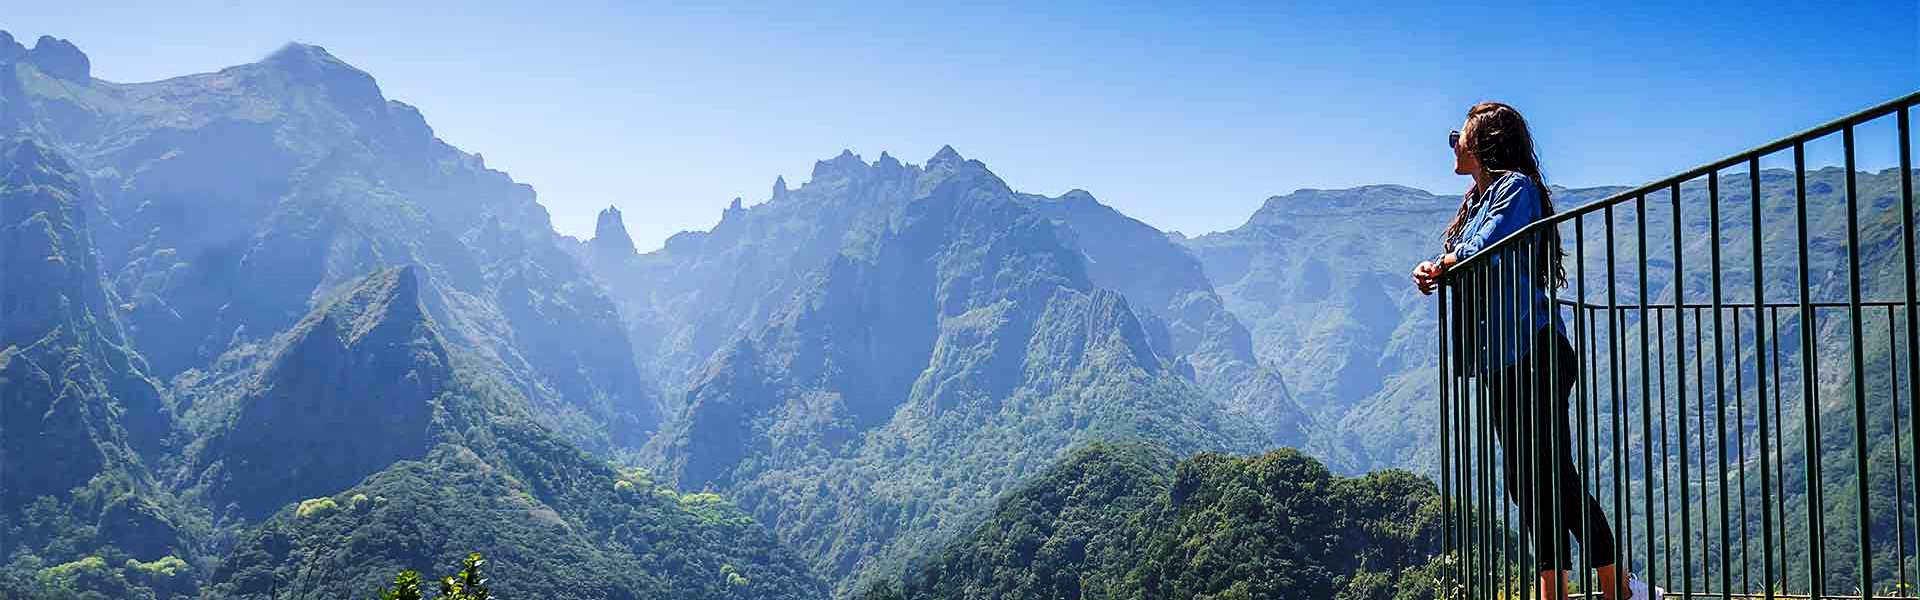 Maravilhas da natureza: 6 belos lugares para explorar na Ilha da Madeira